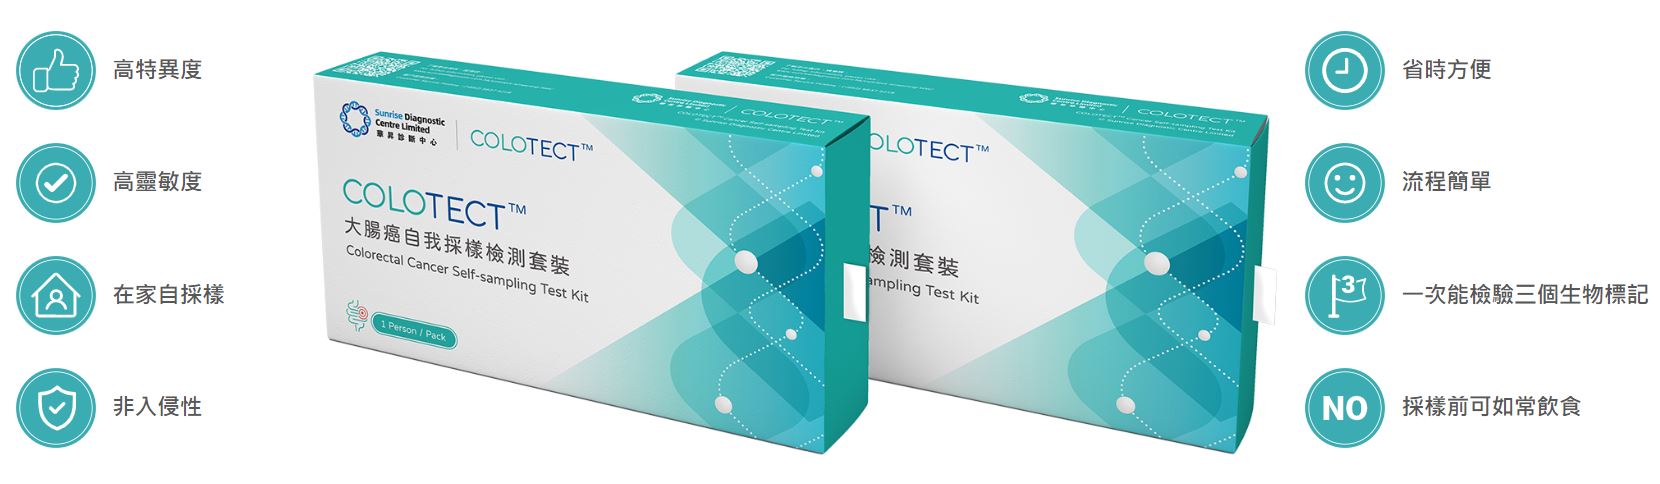 COLOTECT™Colorectal Cancer Self-Sampling Test Kit